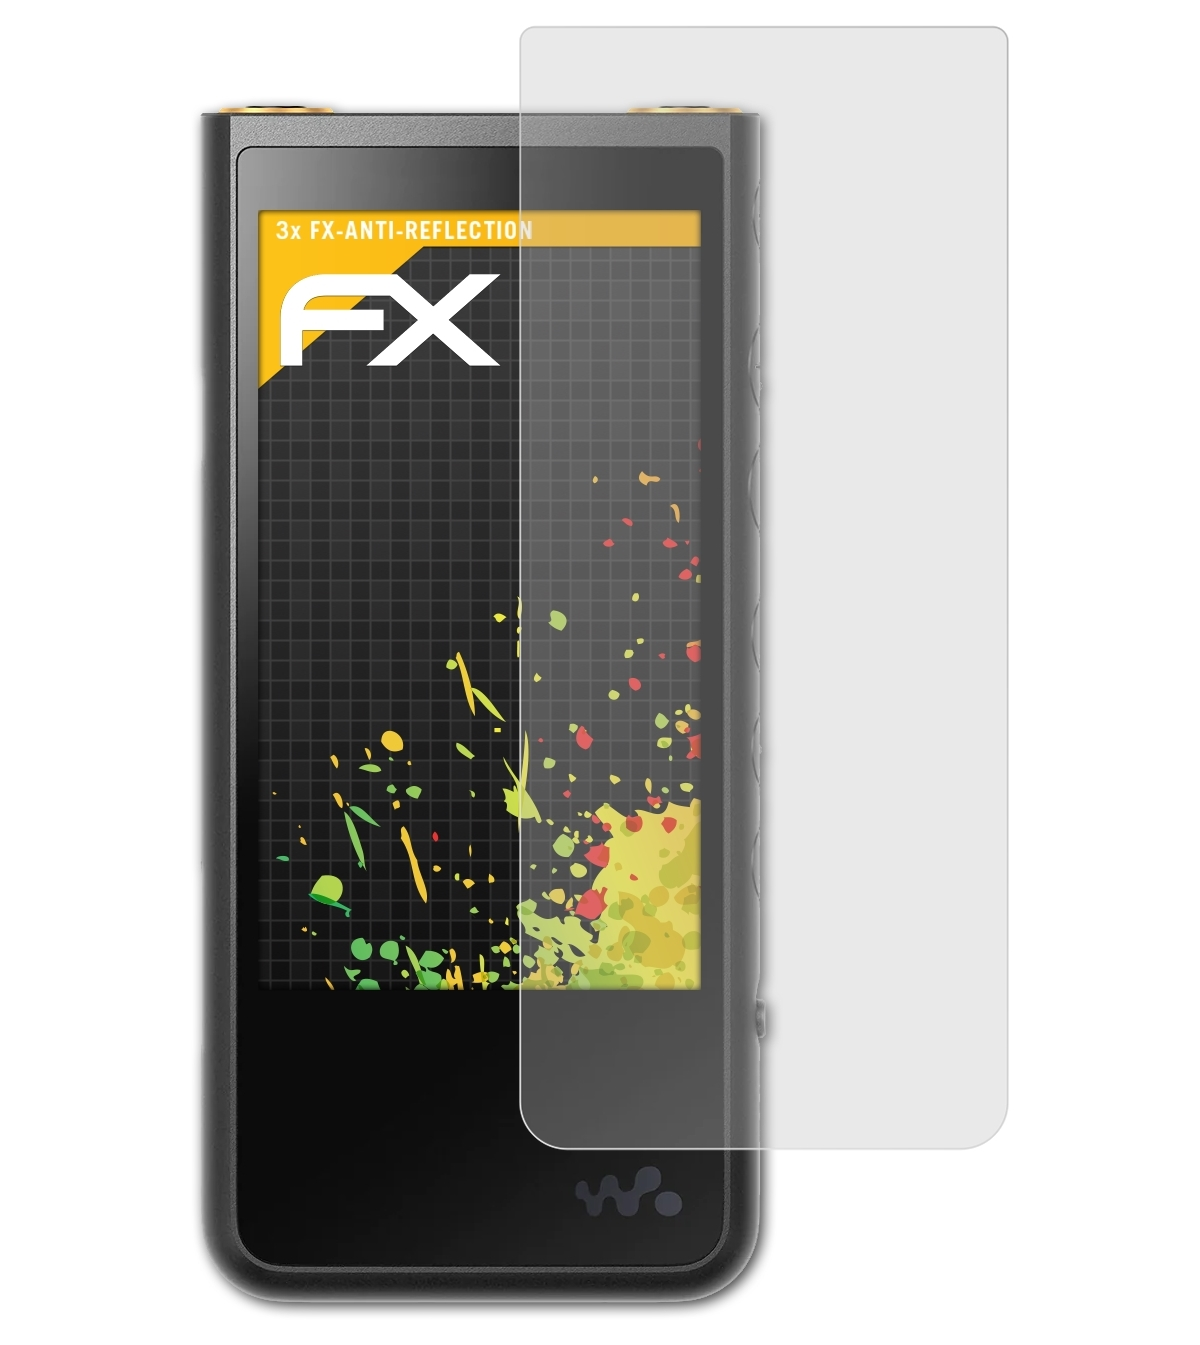 NW-ZX500) 3x Displayschutz(für Walkman ATFOLIX Sony FX-Antireflex